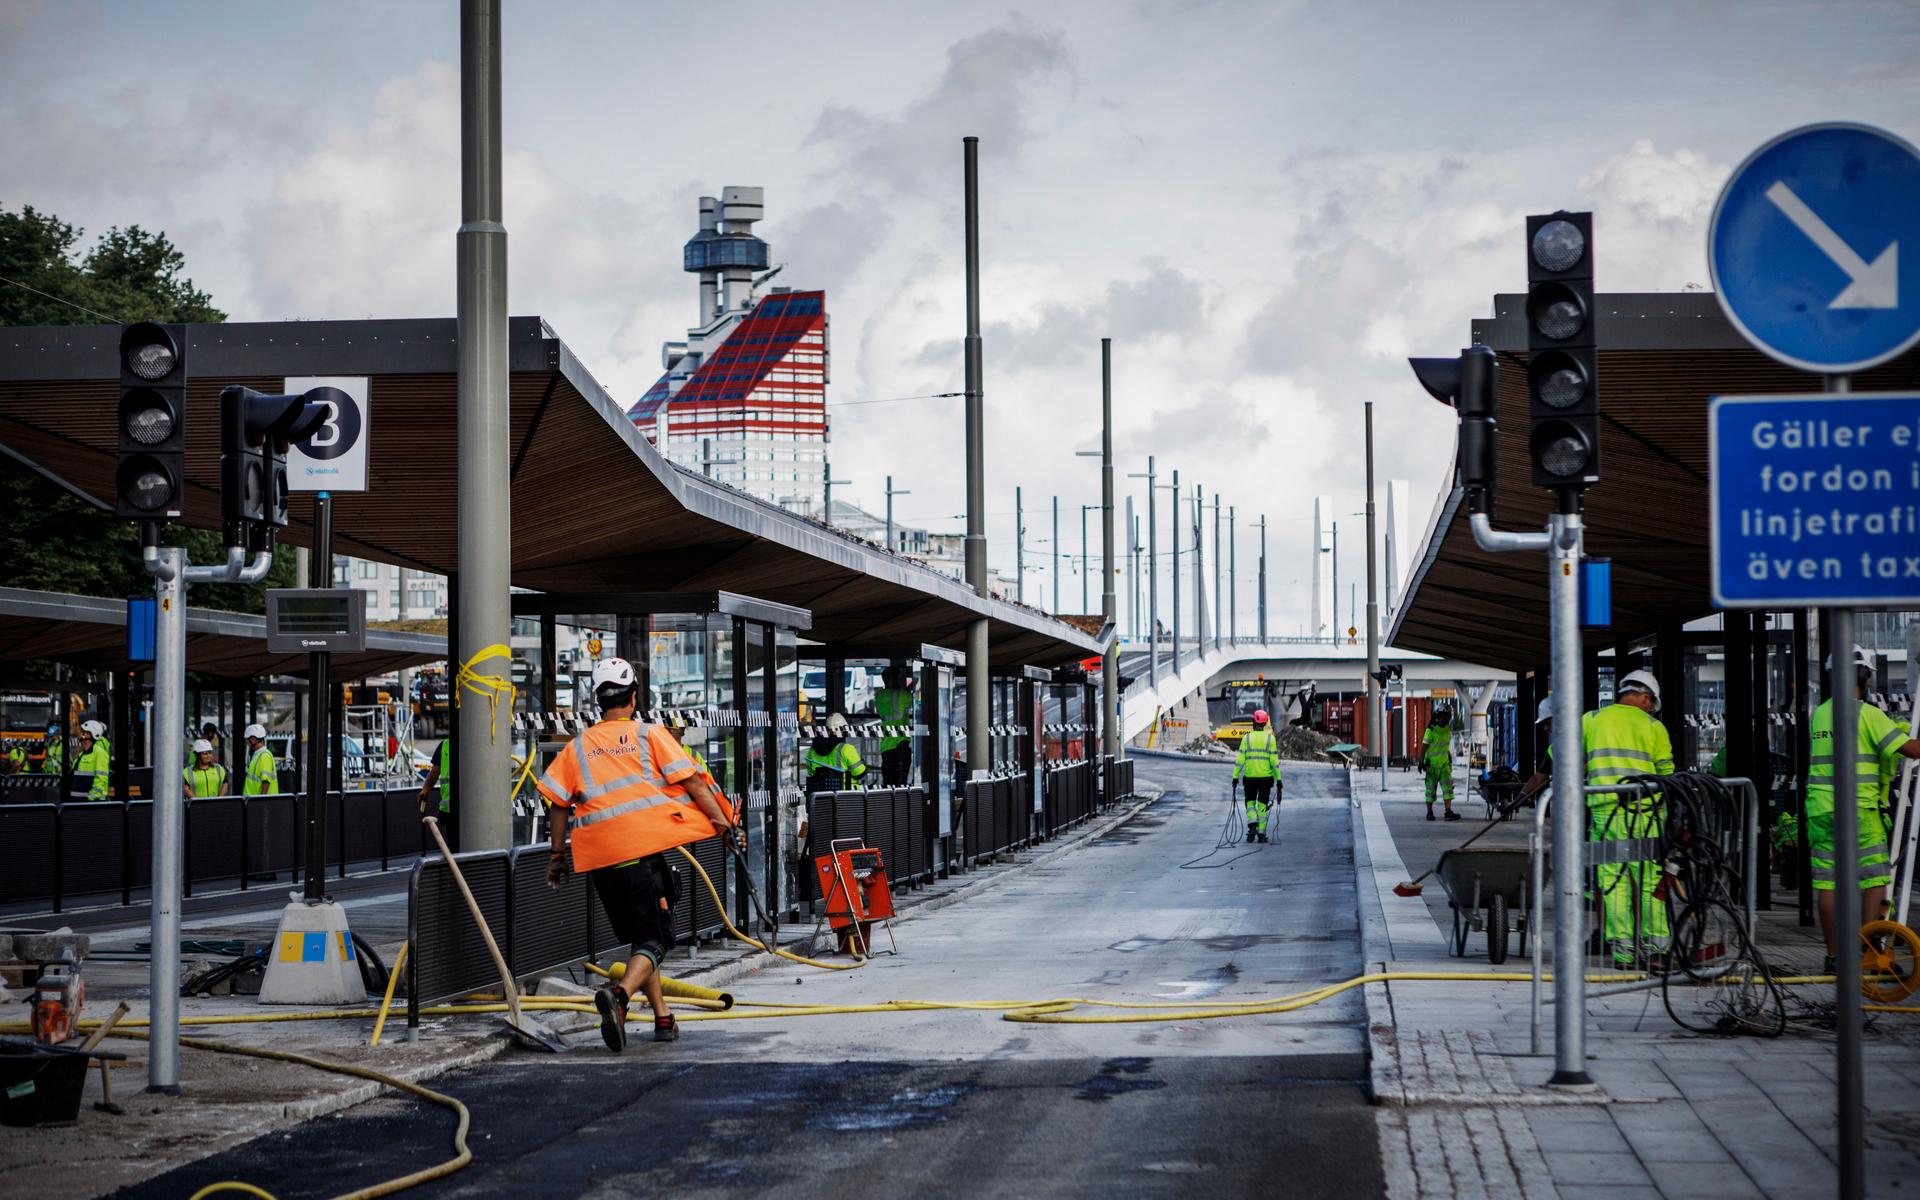 Hållplatsen Nordstan Göteborg är redan ombyggd. Byggnationen är den första av flera större knutpunkter som ska utformas på liknande sätt. Arkivbild.